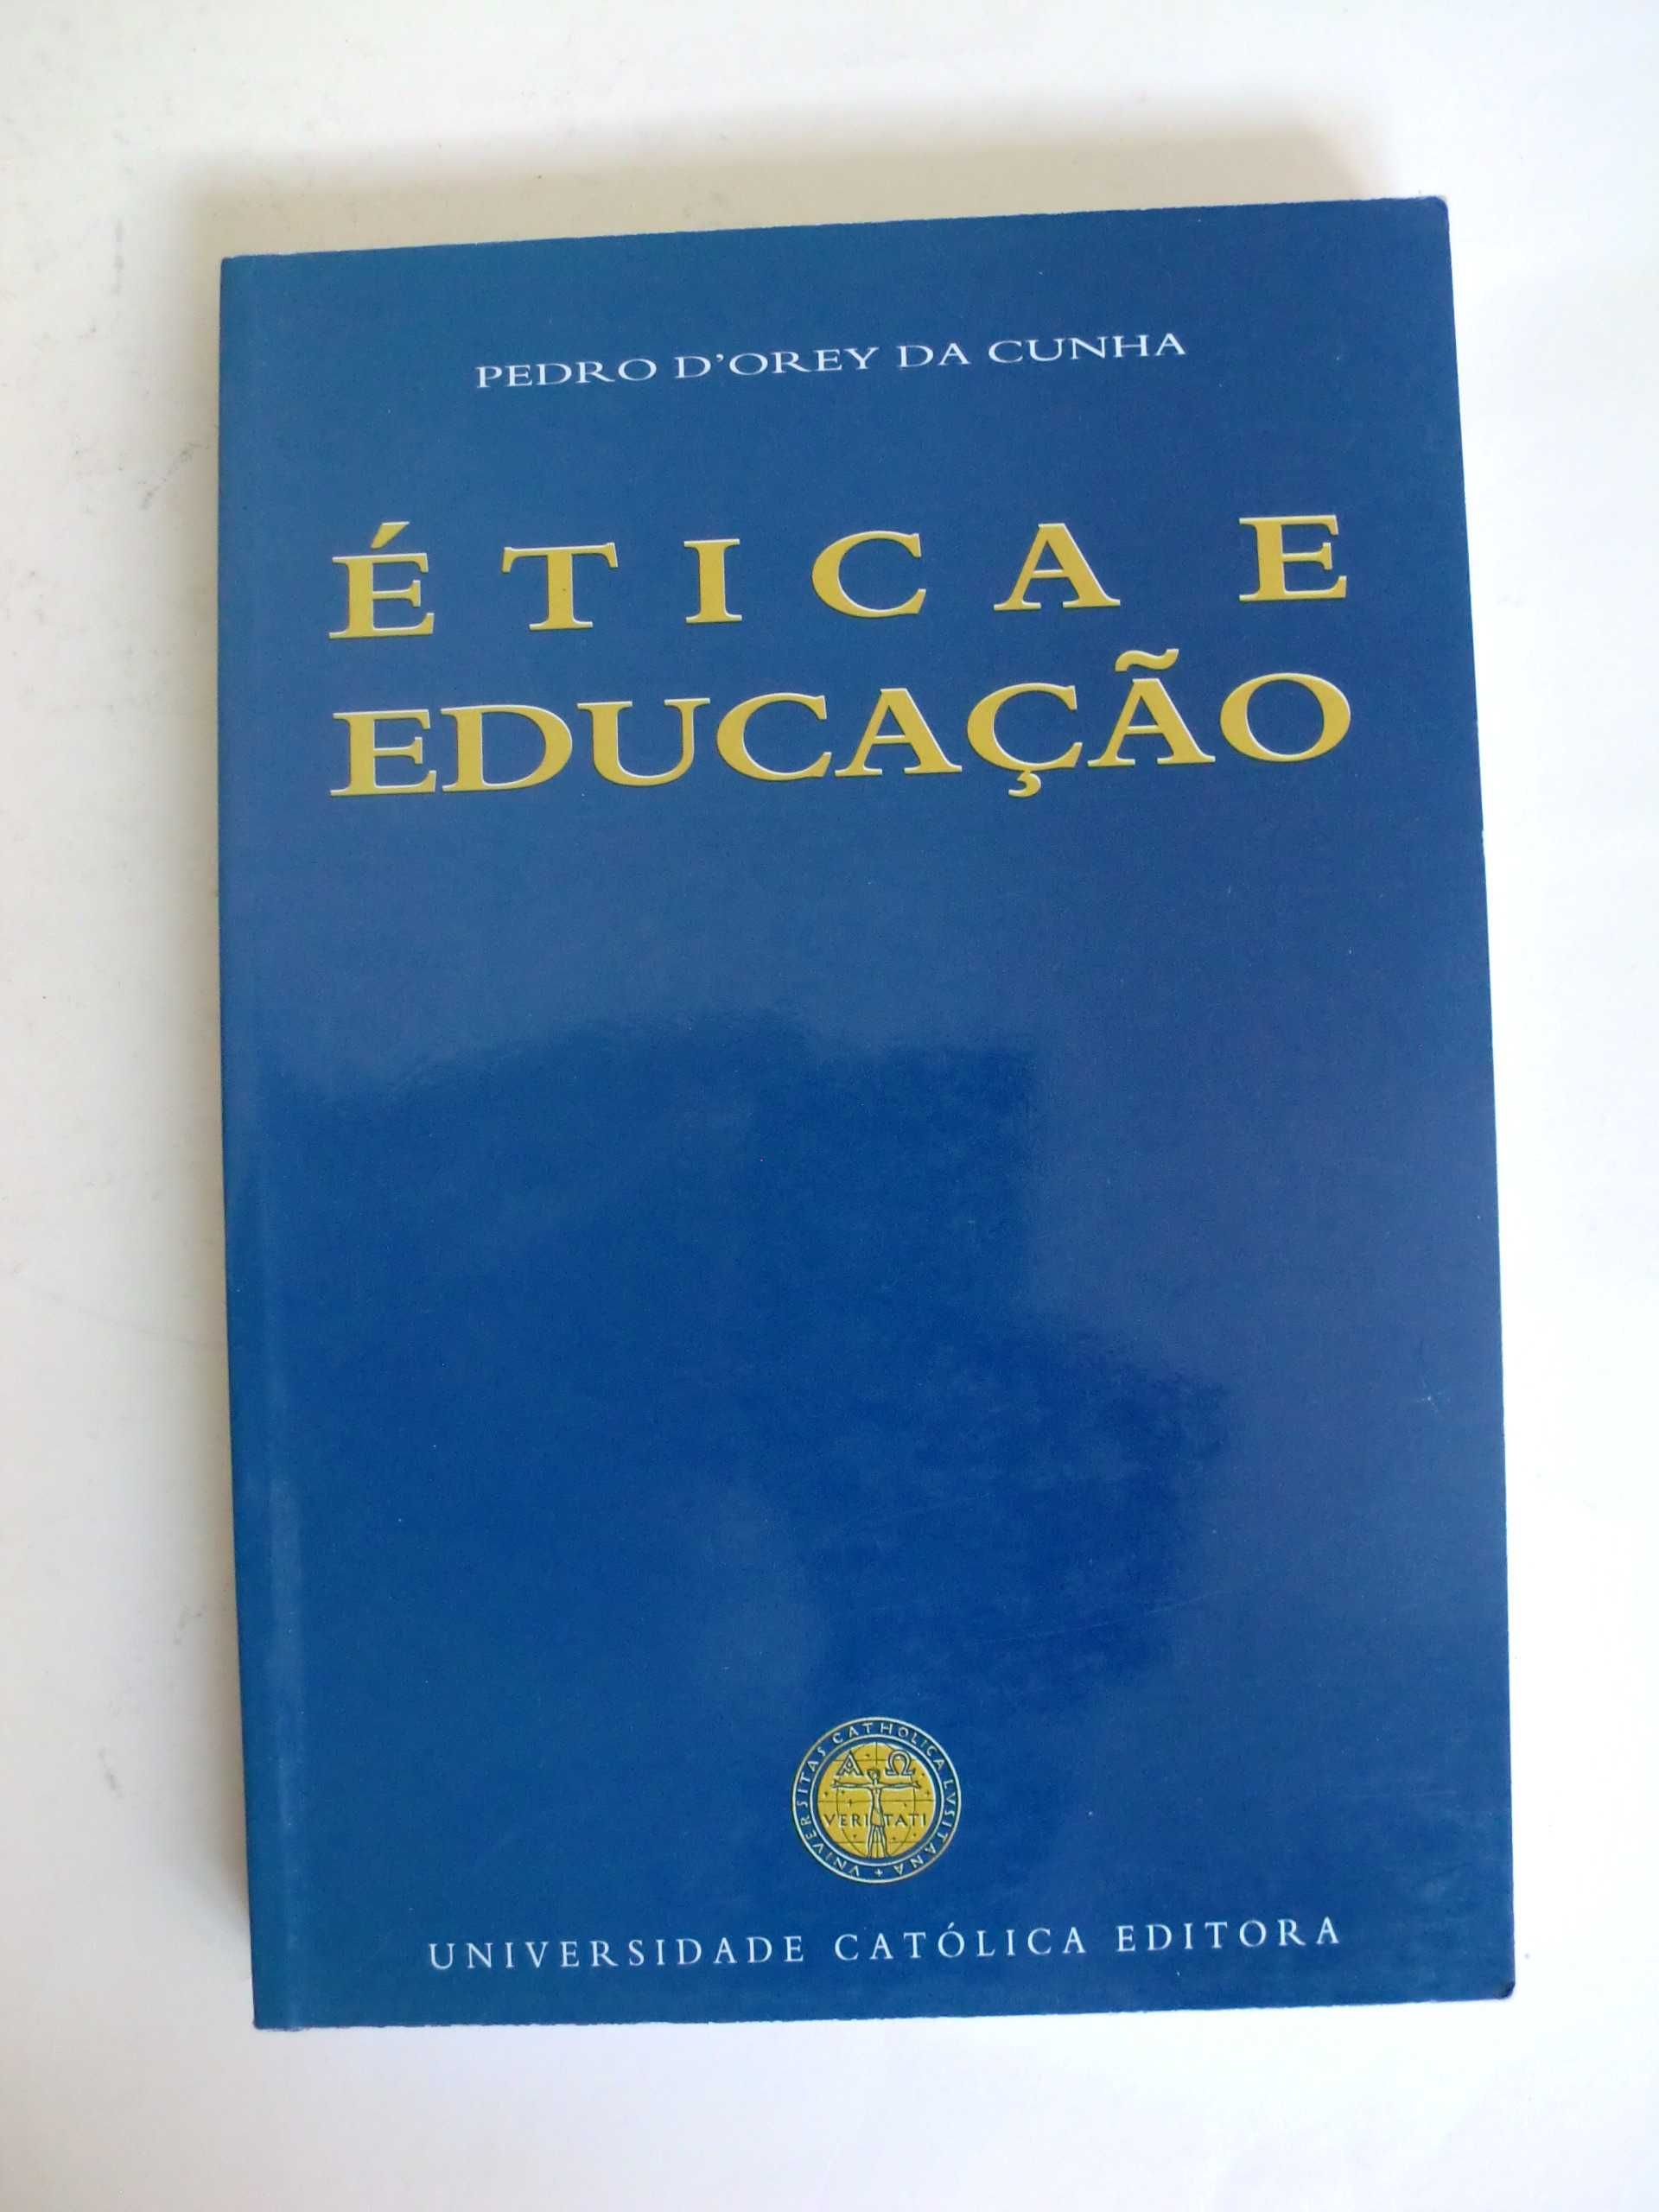 Ética e Educação
de Pedro D´Orey da Cunha